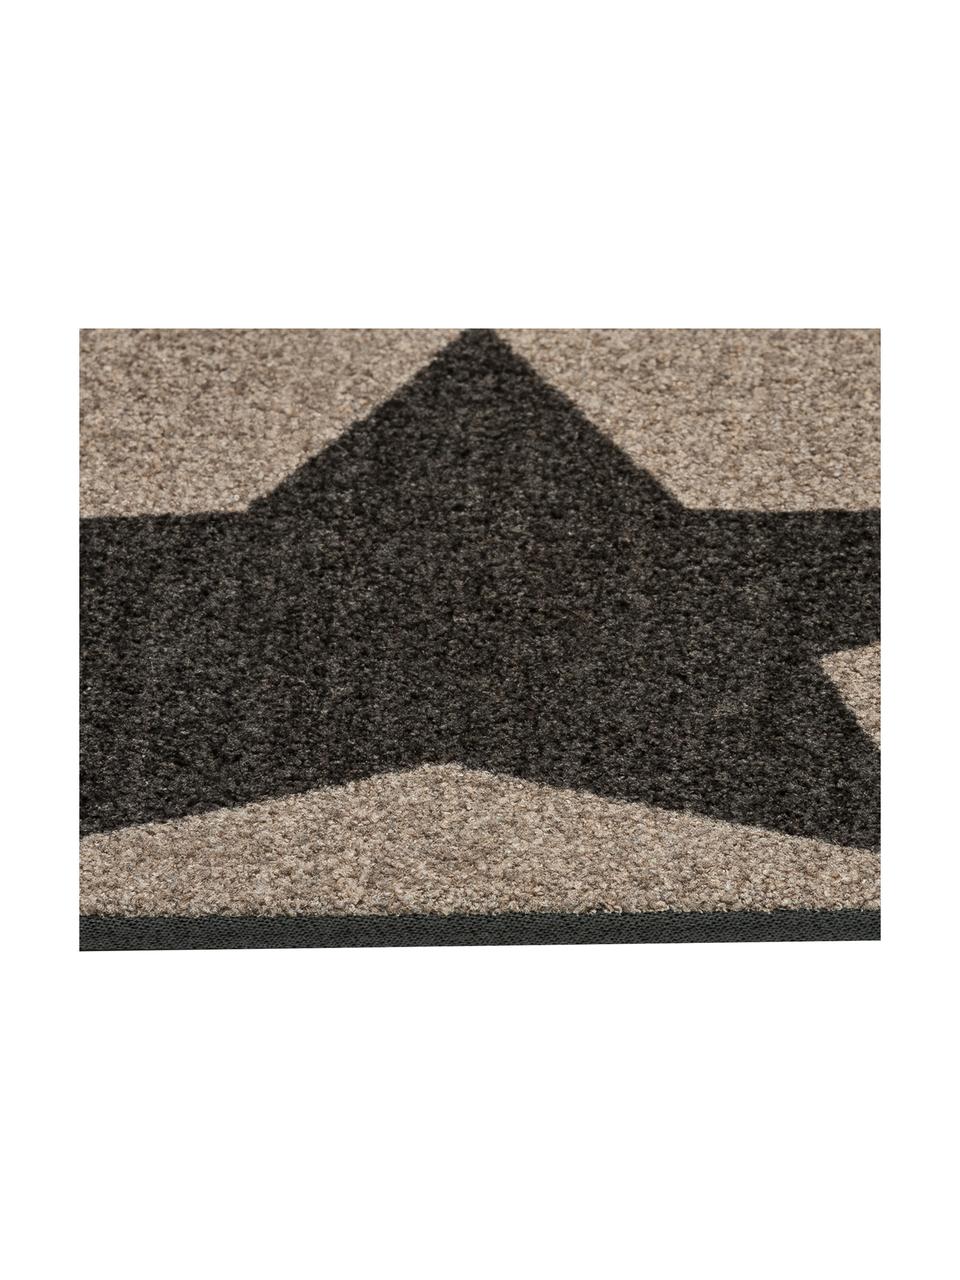 Fußmatte Big Star, Oberseite: 100% Polyamid, Unterseite: Latex-Gel Schaumrücken, Hellbraun, Schwarz, 46 x 76 cm